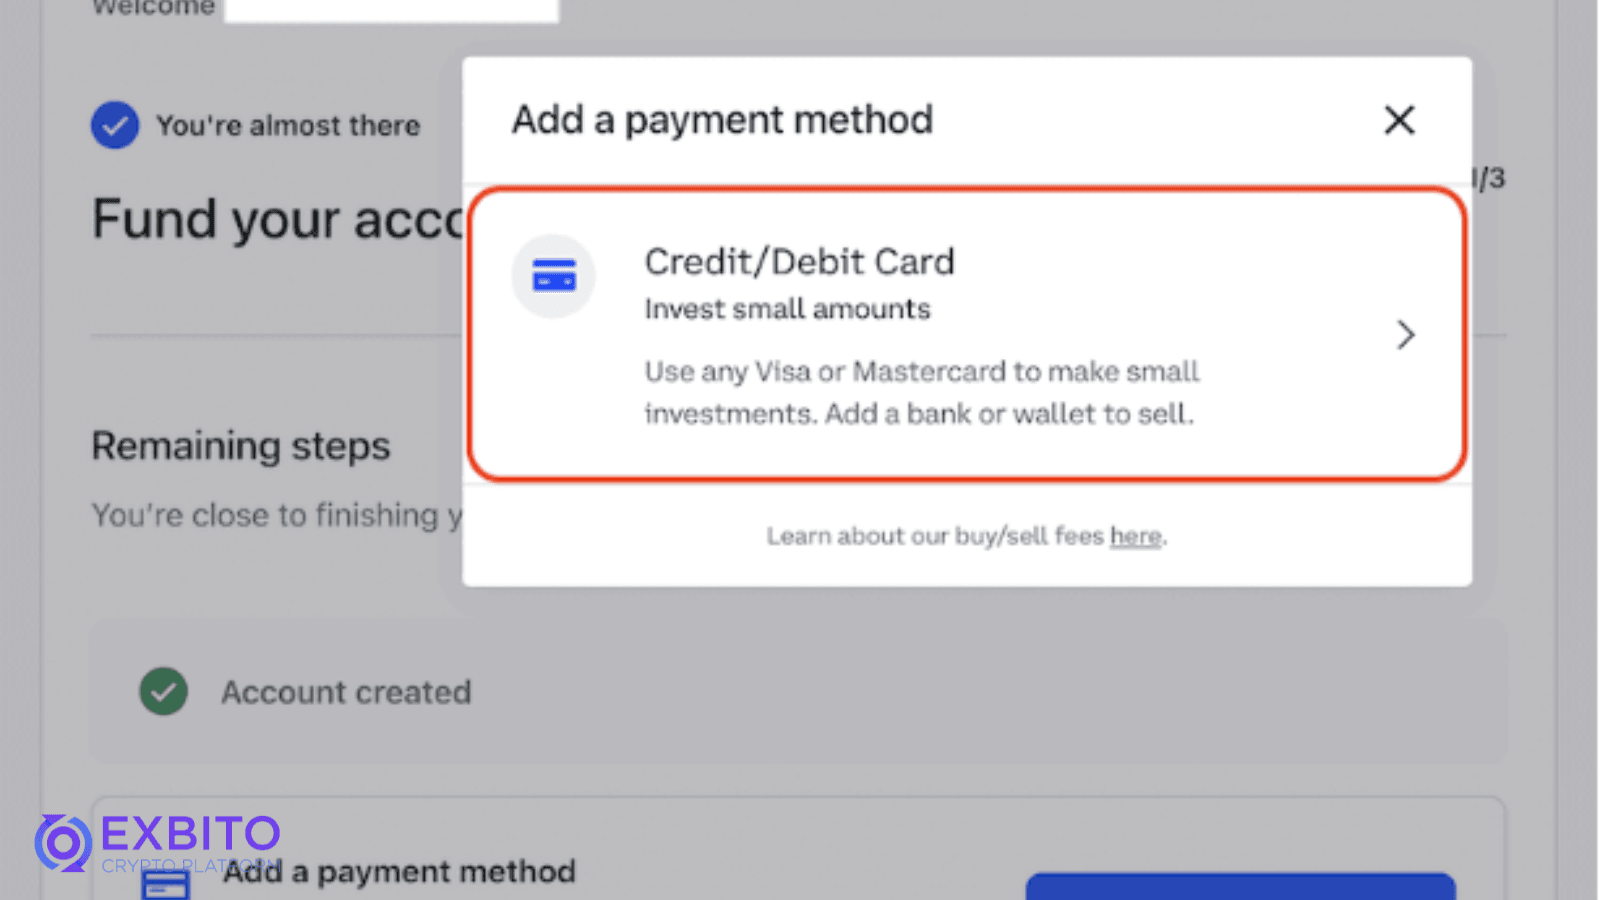 سپس، بر روی گزینه CreditDebit Card کلیک کنید